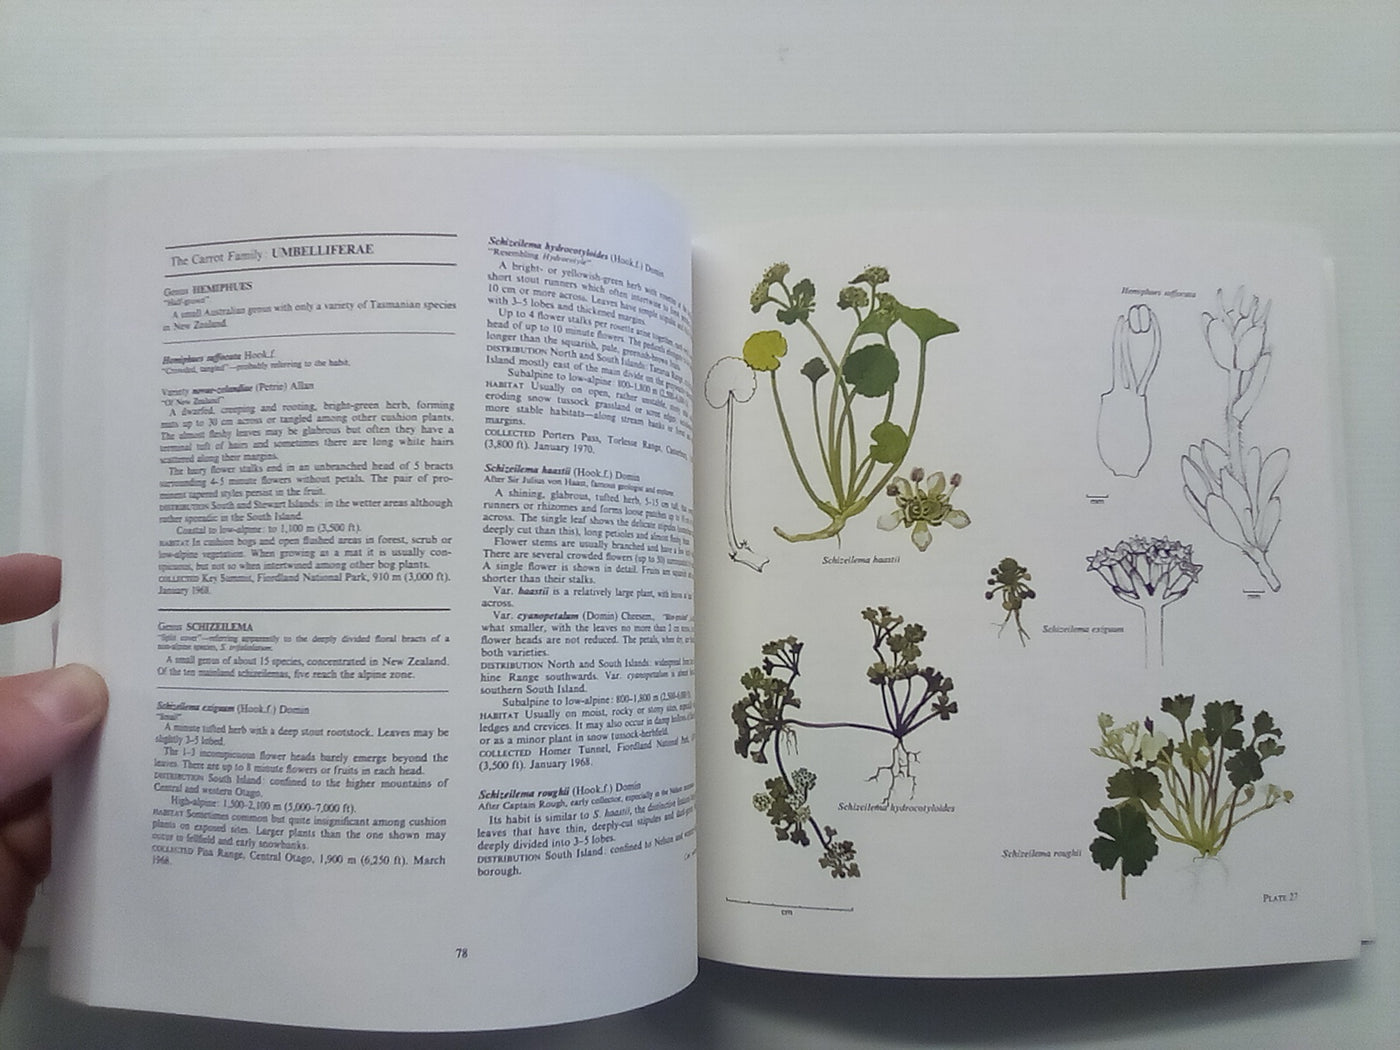 New Zealand Alpine Plants (1979) by A.F. Mark & N.M Adams